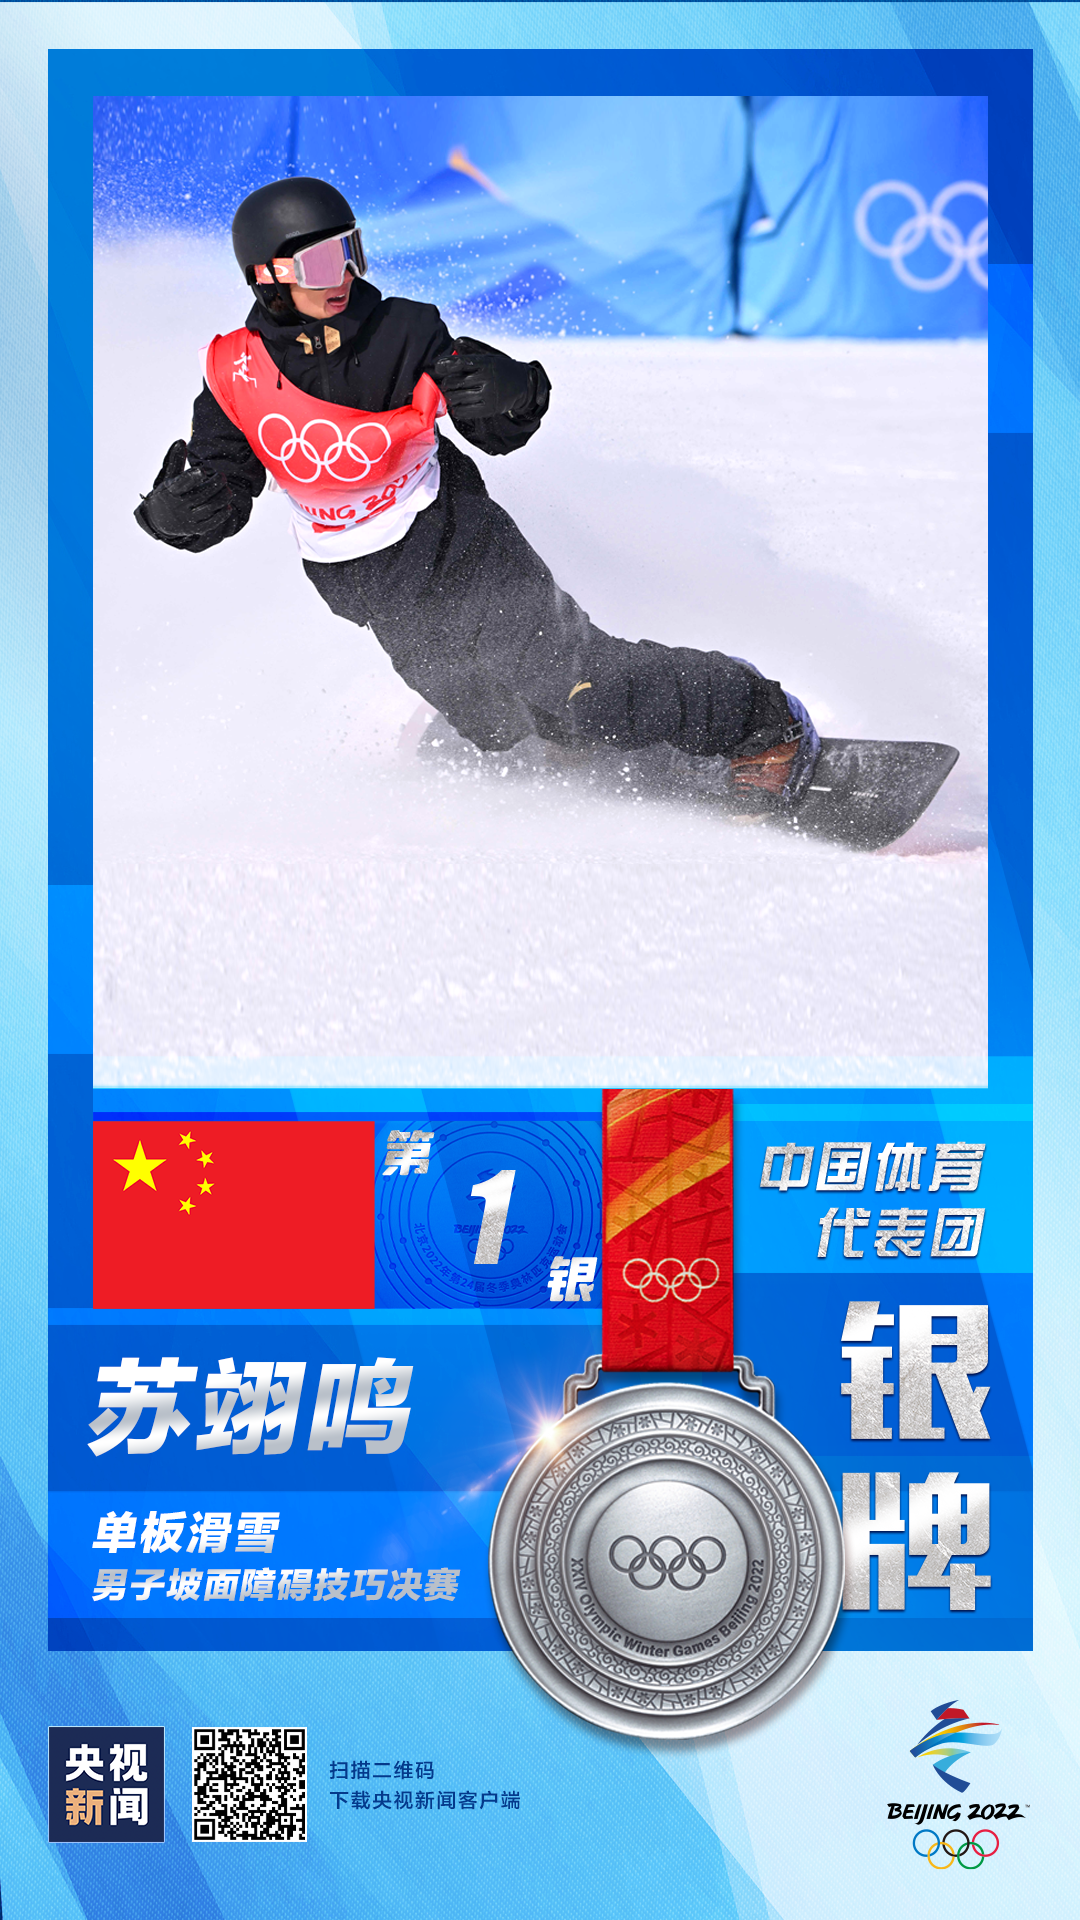 苏翊鸣获得单板滑雪男子坡面障碍技巧银牌